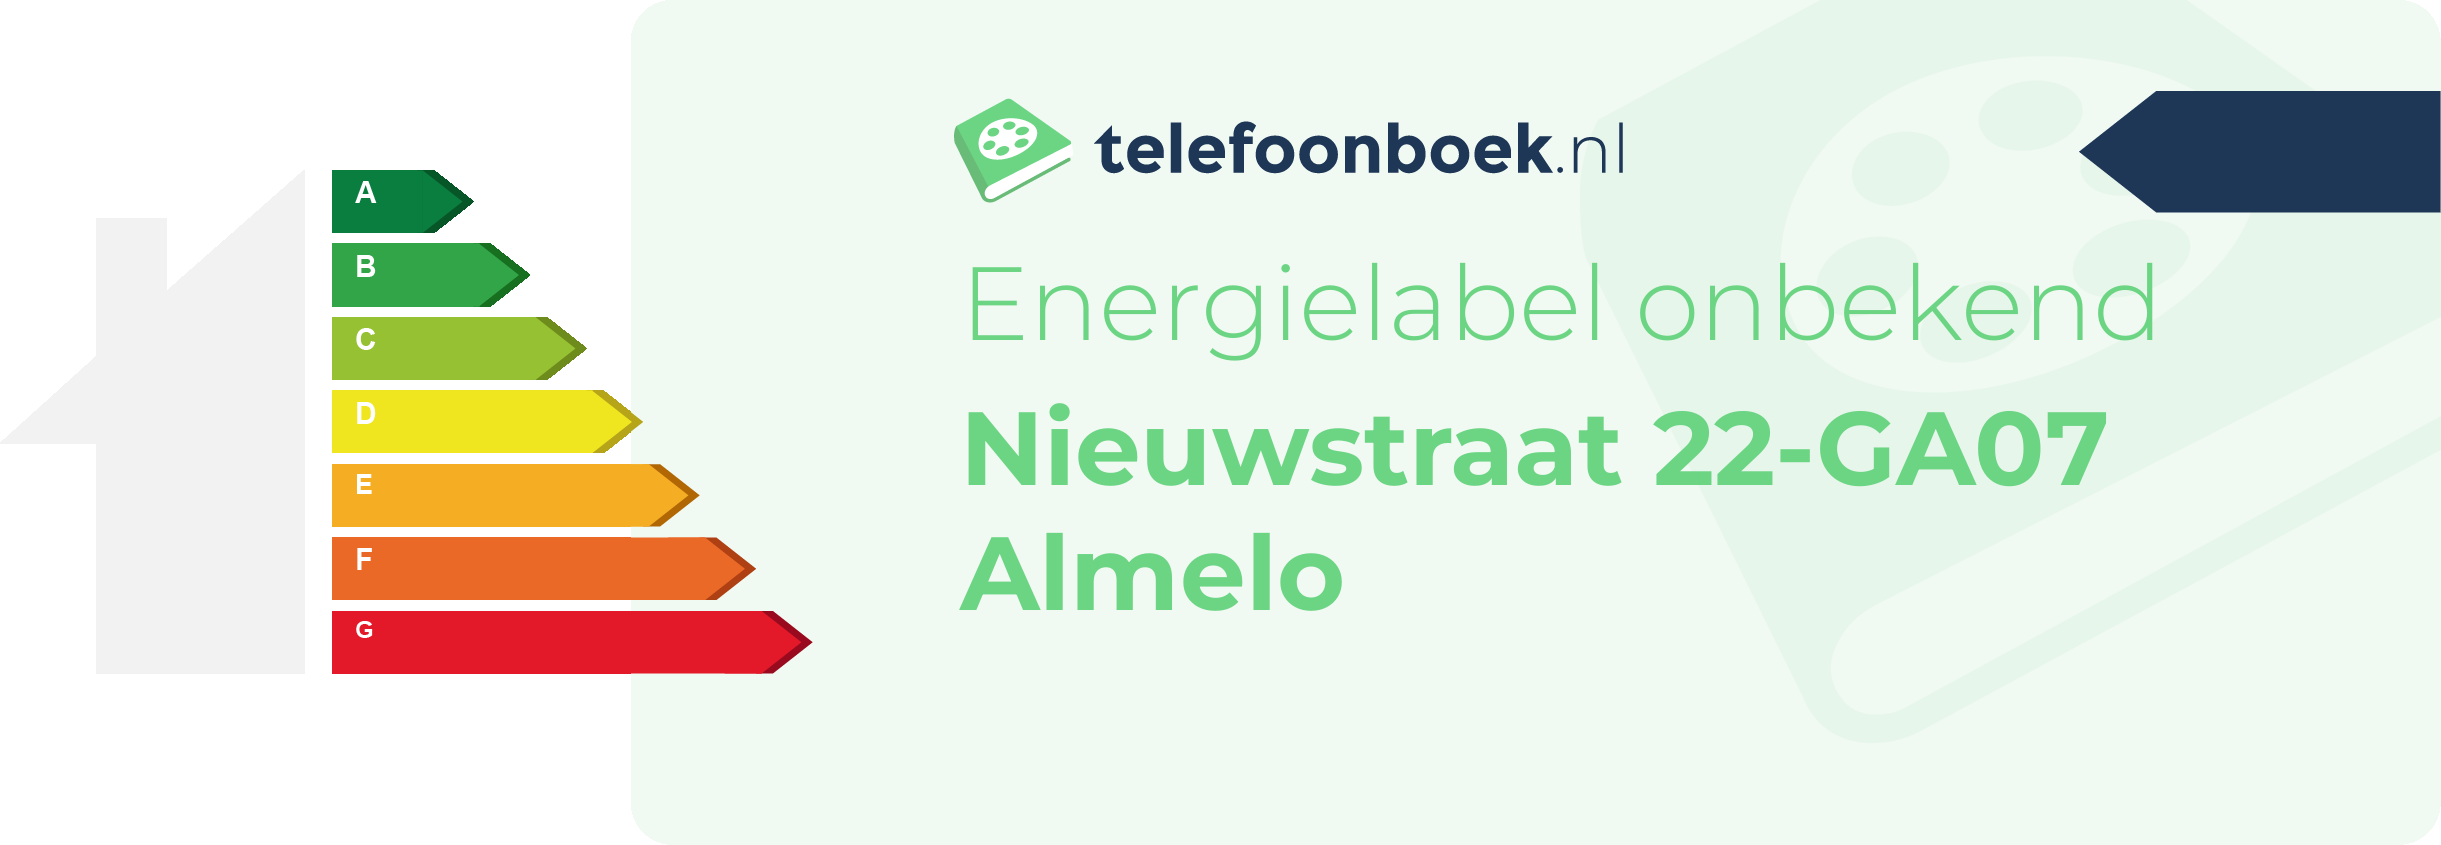 Energielabel Nieuwstraat 22-GA07 Almelo